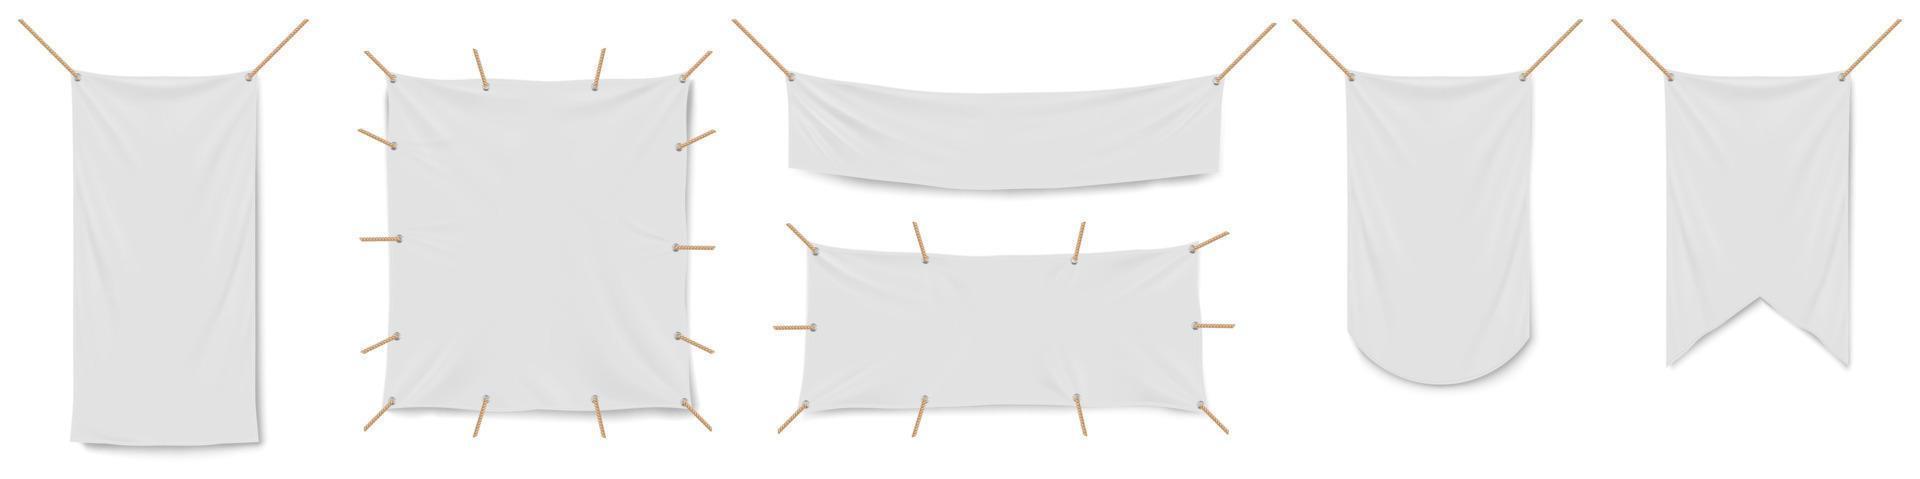 blanco wit vinyl spandoeken, vlaggen en wimpels vector